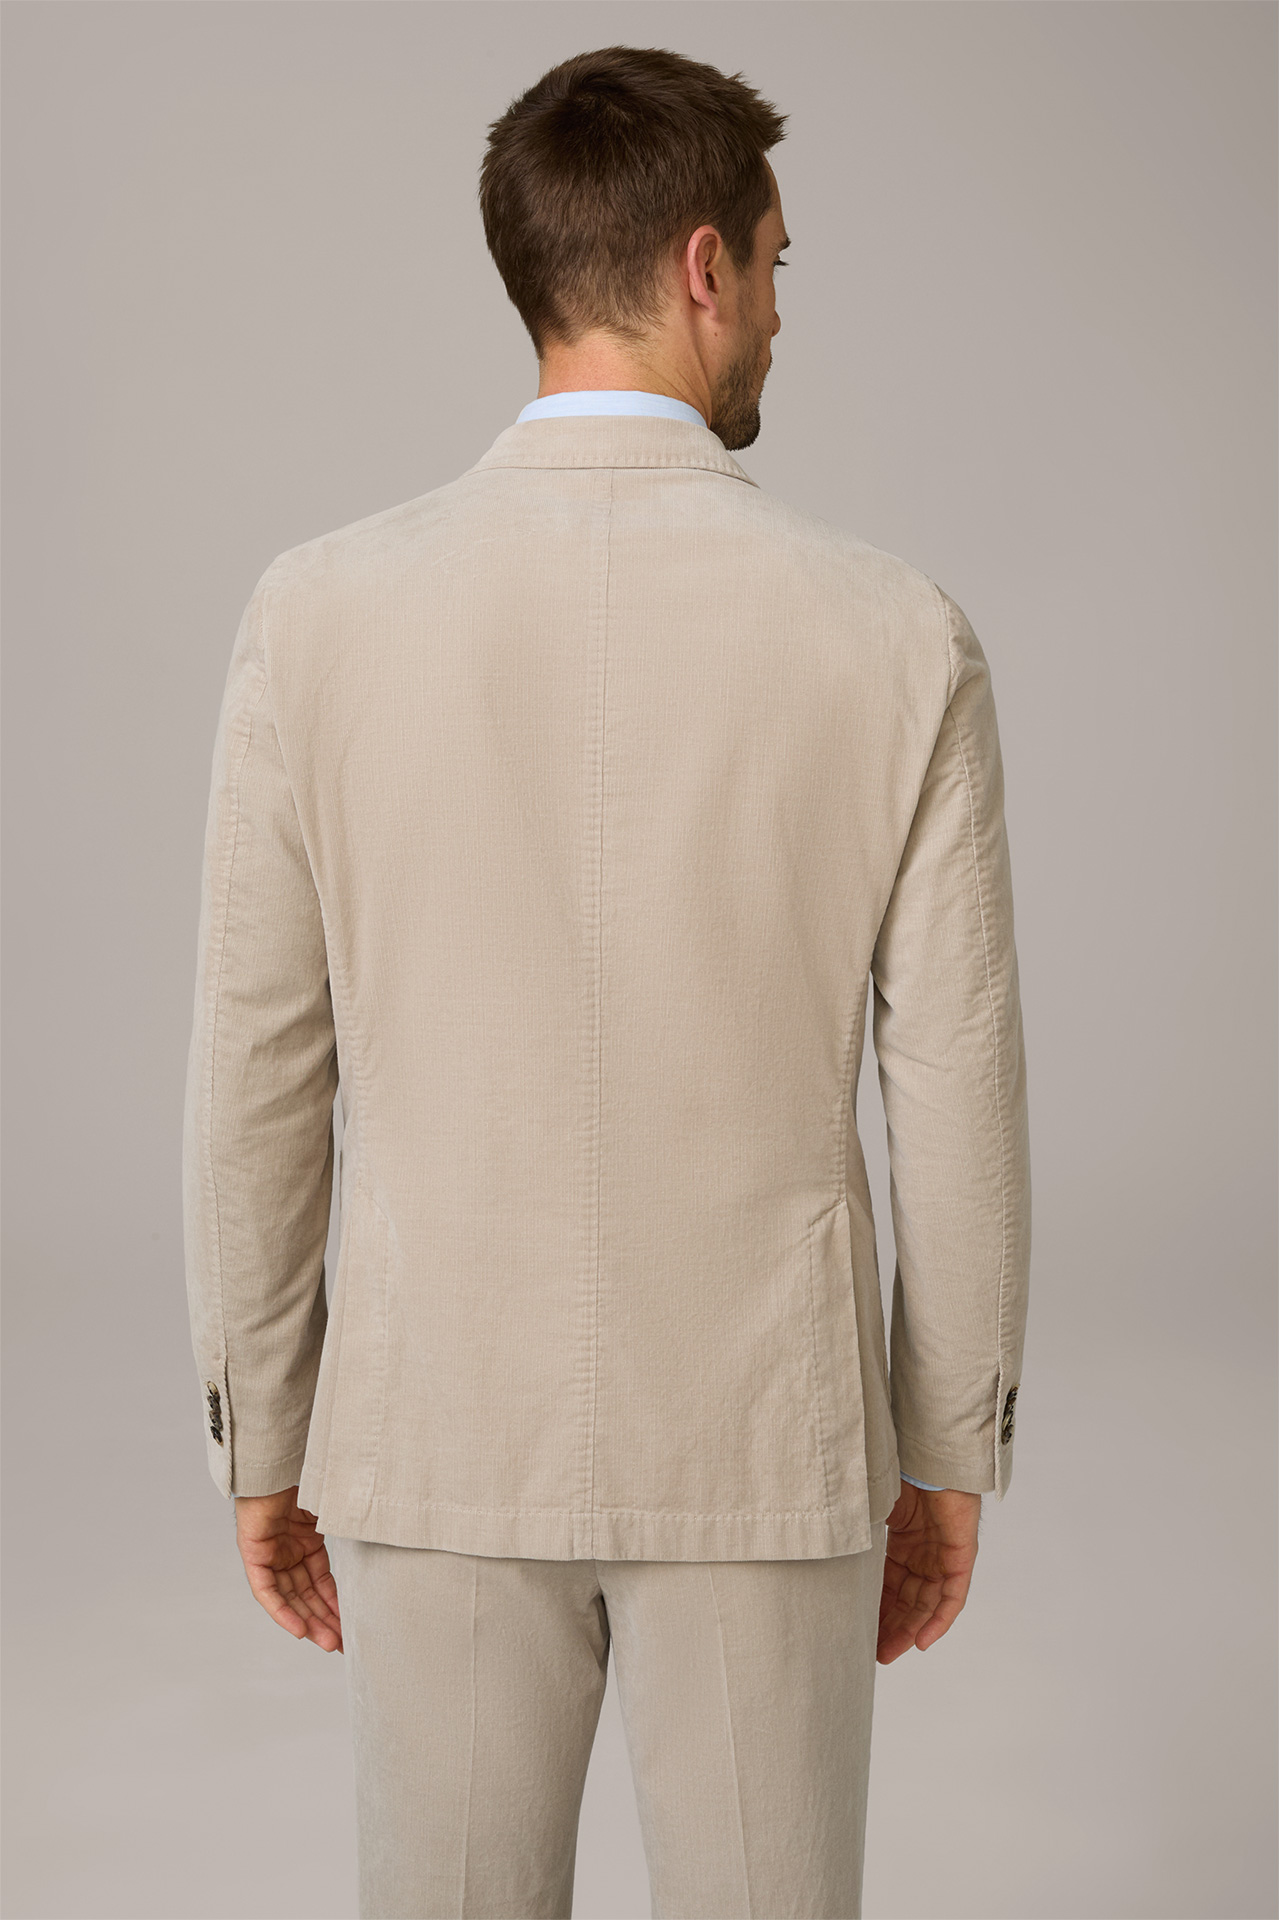 Veste de costume à fermeture croisée en velours côtelé Salino, couleur taupe